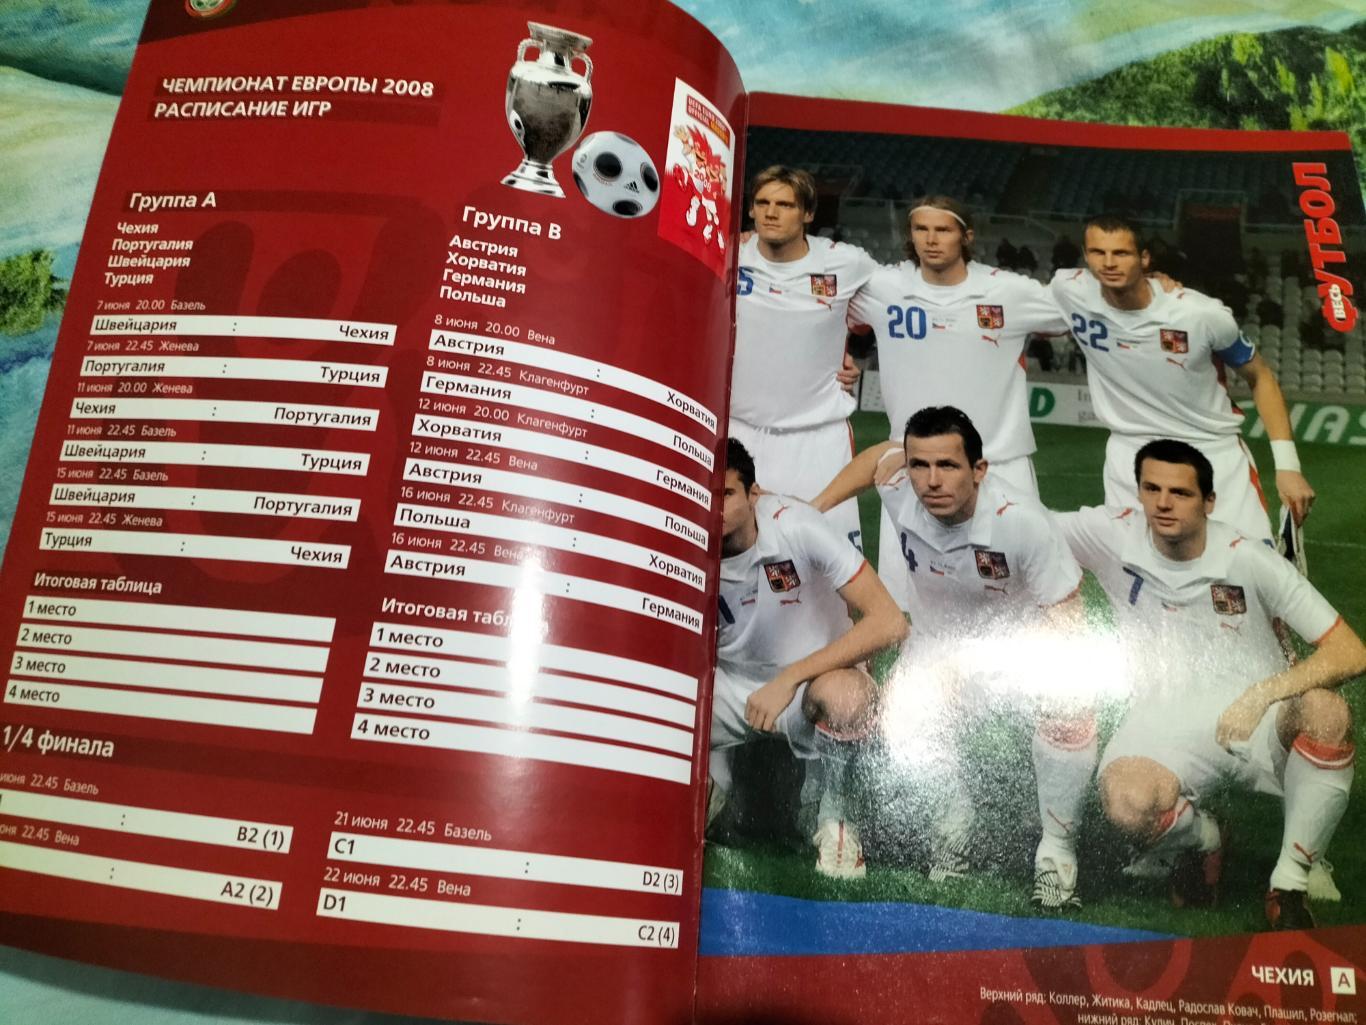 Весь Футбол №1-2 2008 года.Постеры всех 16 сборных. 7